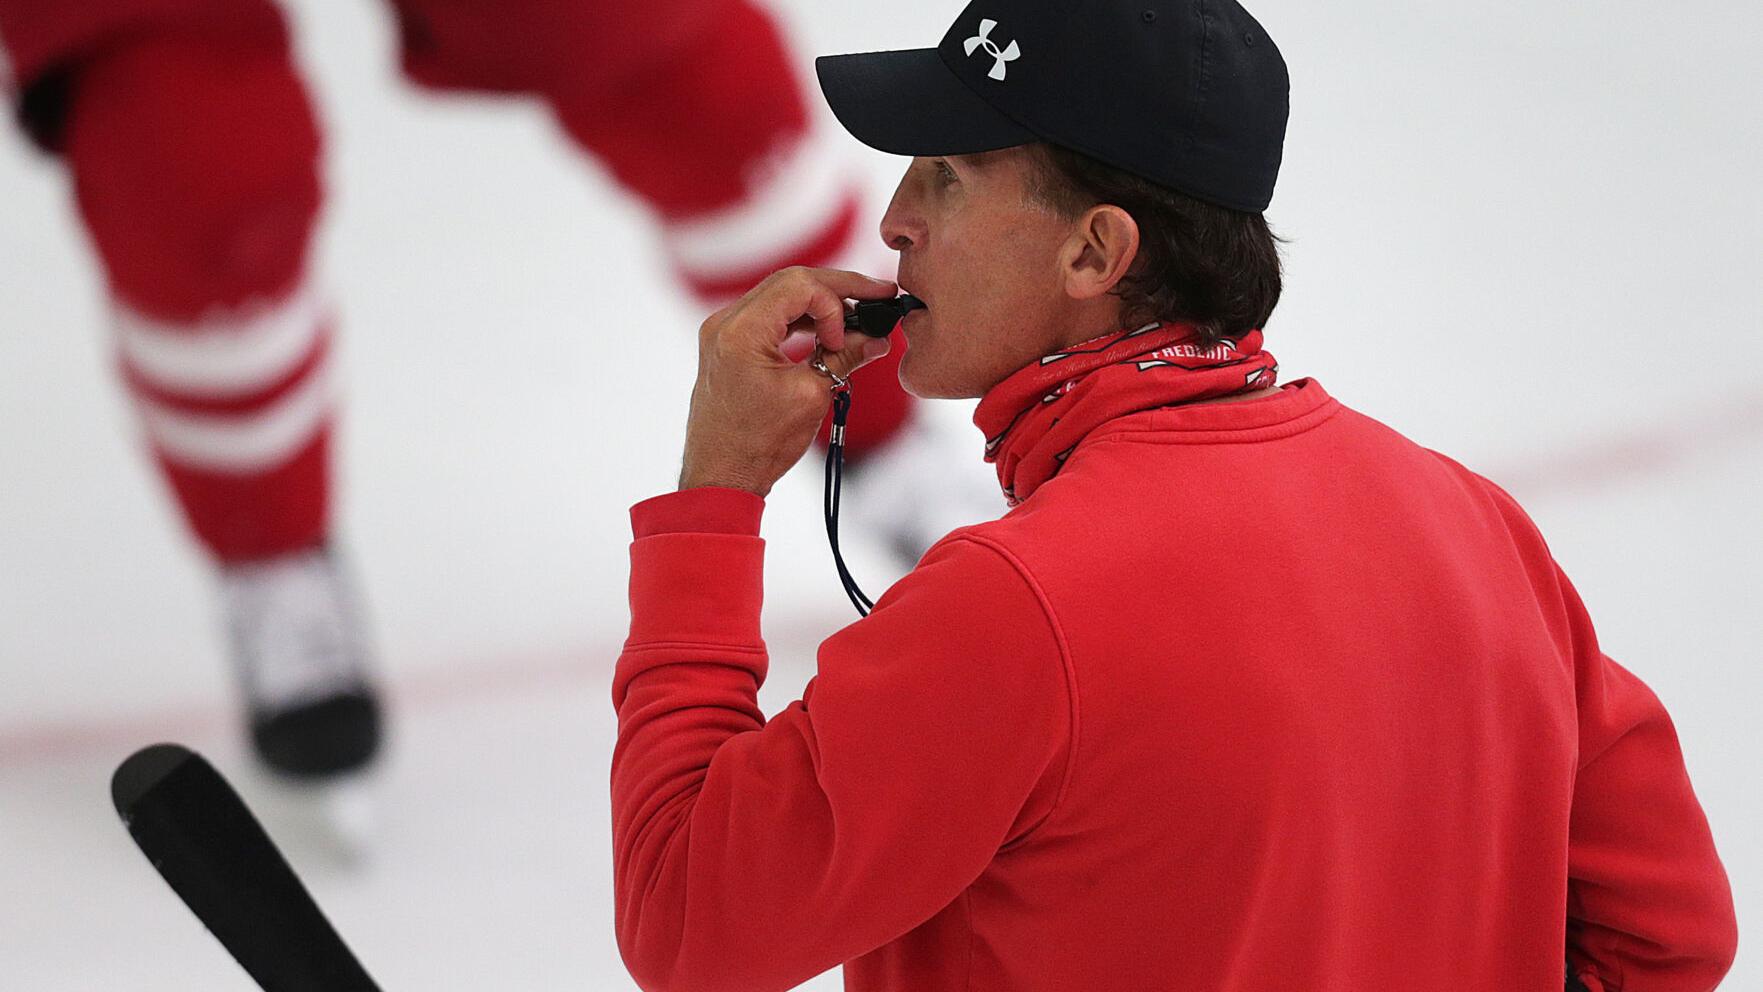 Tony Granato to return for another season as Wisconsin men's hockey coach